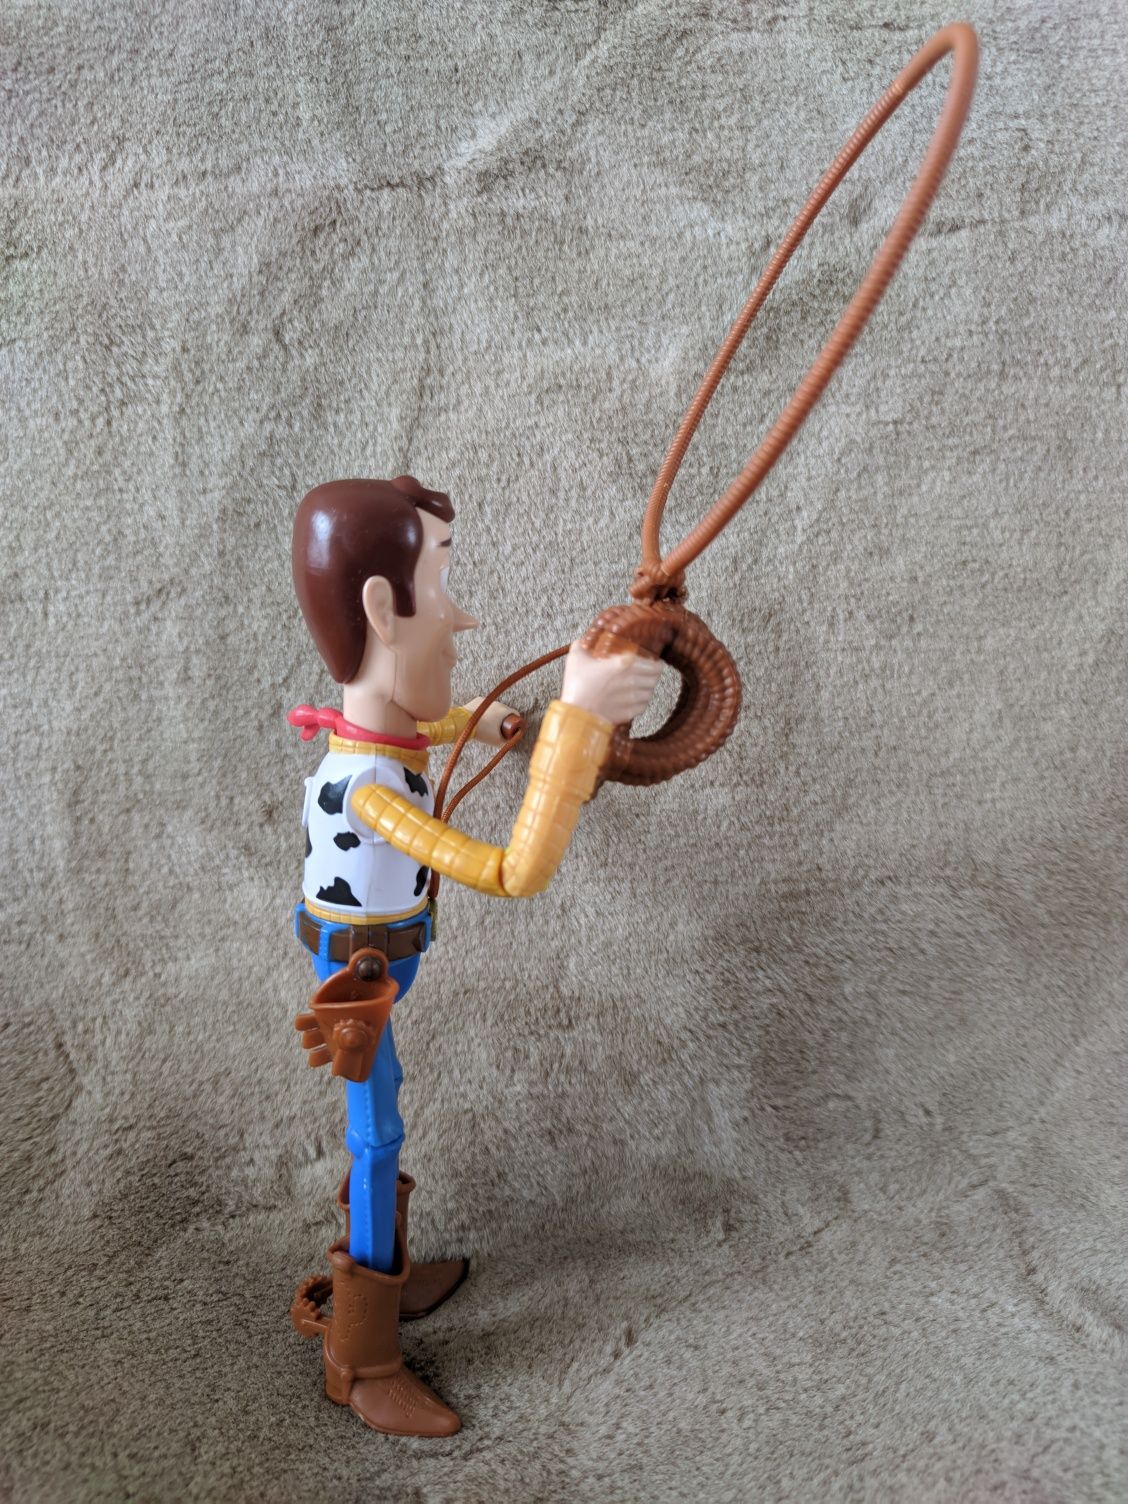 Ковбой Вуди с лассо История Игрушек Toy story Disney Pixar 25 см